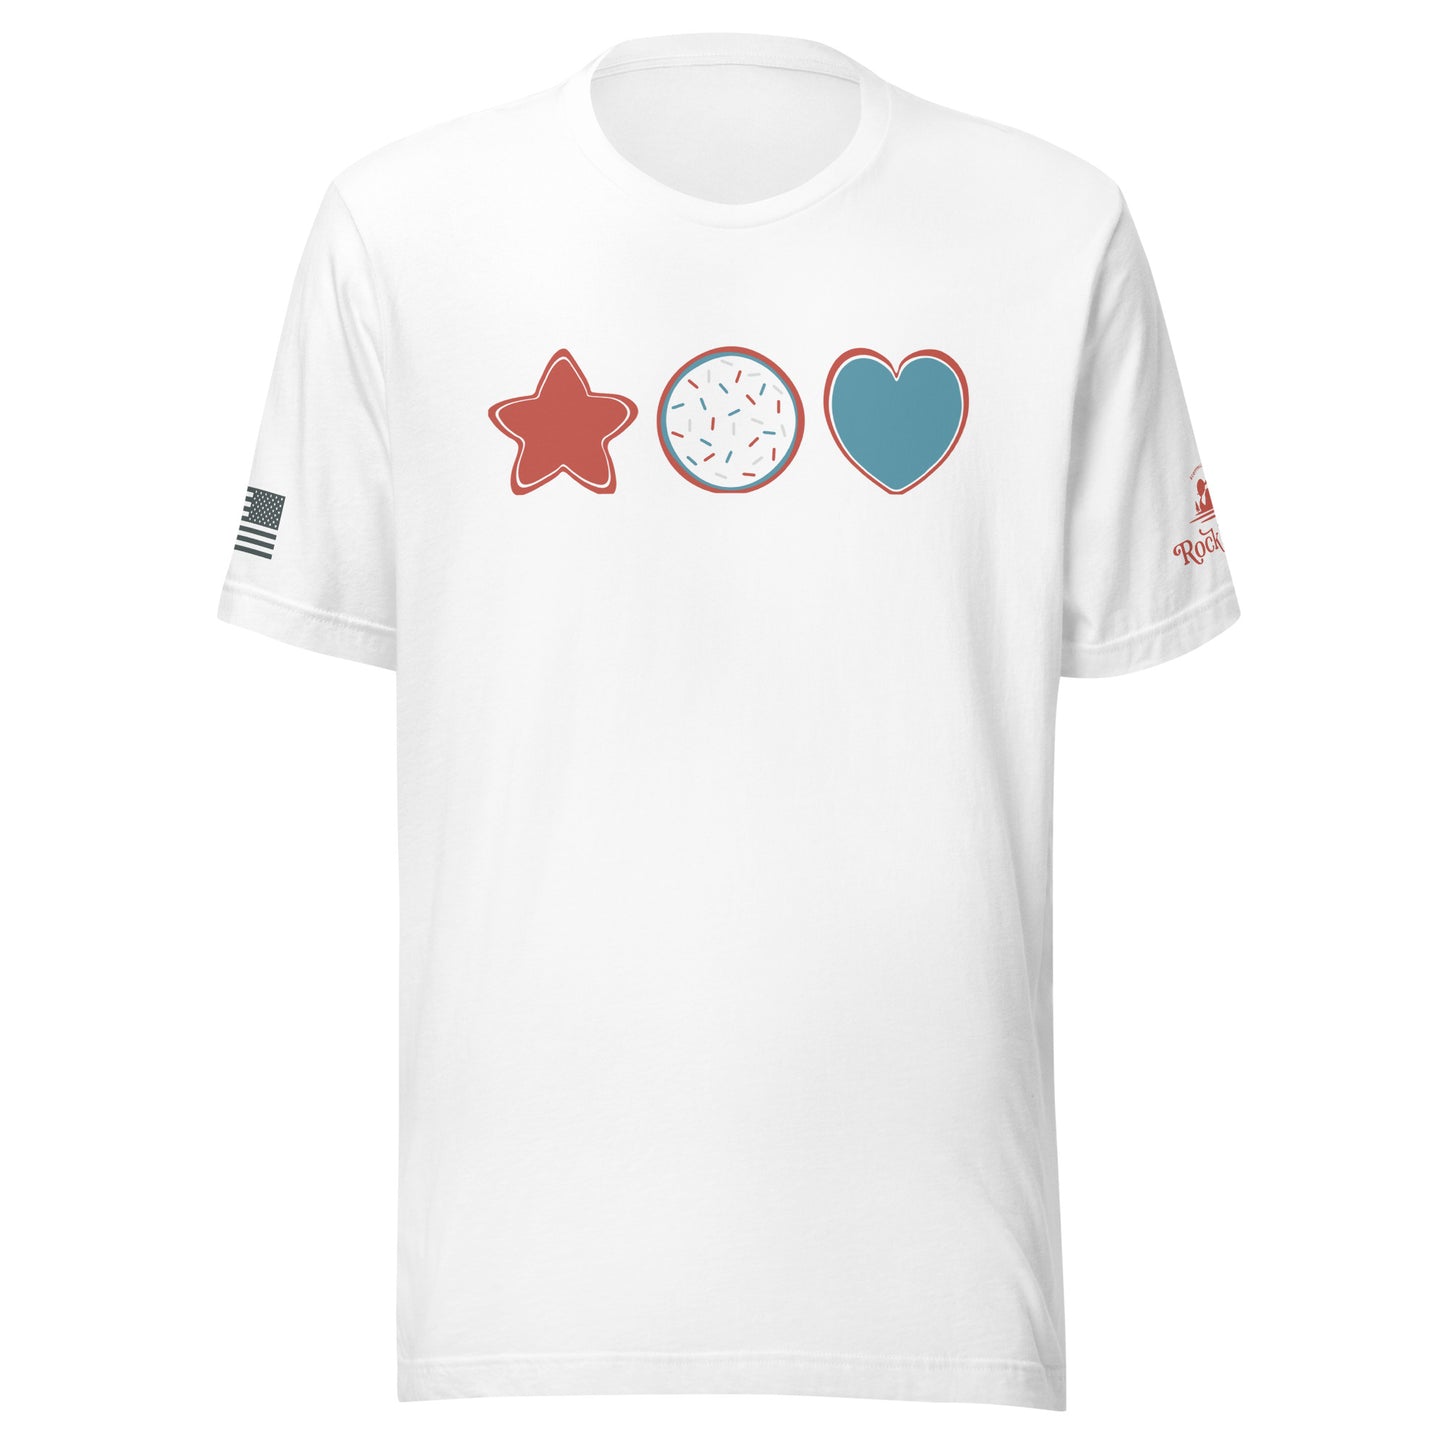 Rock Island Farm Patriotic Icons T-Shirt